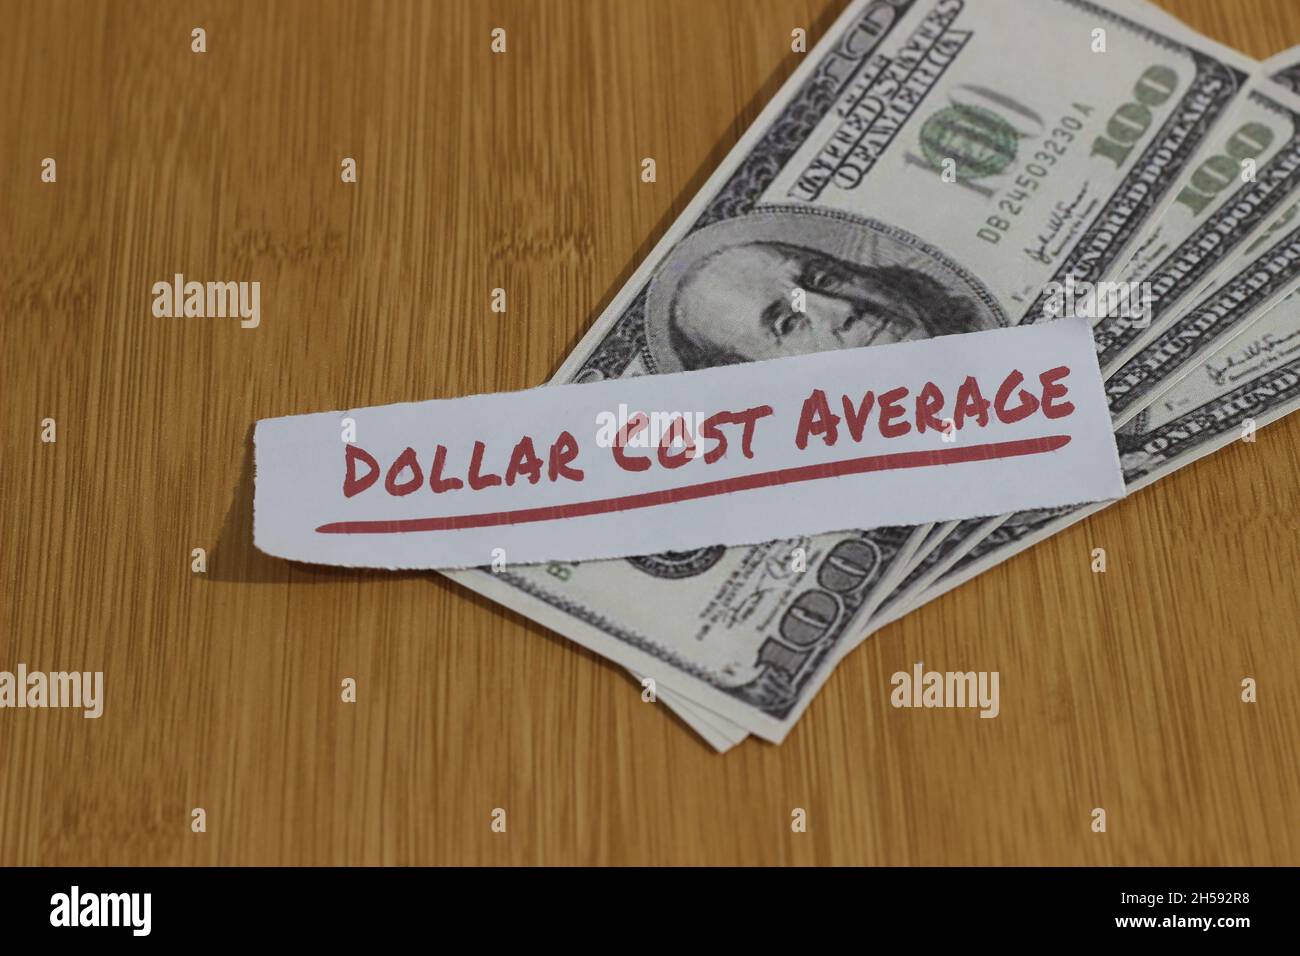 Konzeptfoto, Stapel zufällig Geld Papier und Text Dollar Kosten Durchschnitt oder DCA goldene Regel Investition Stockfoto